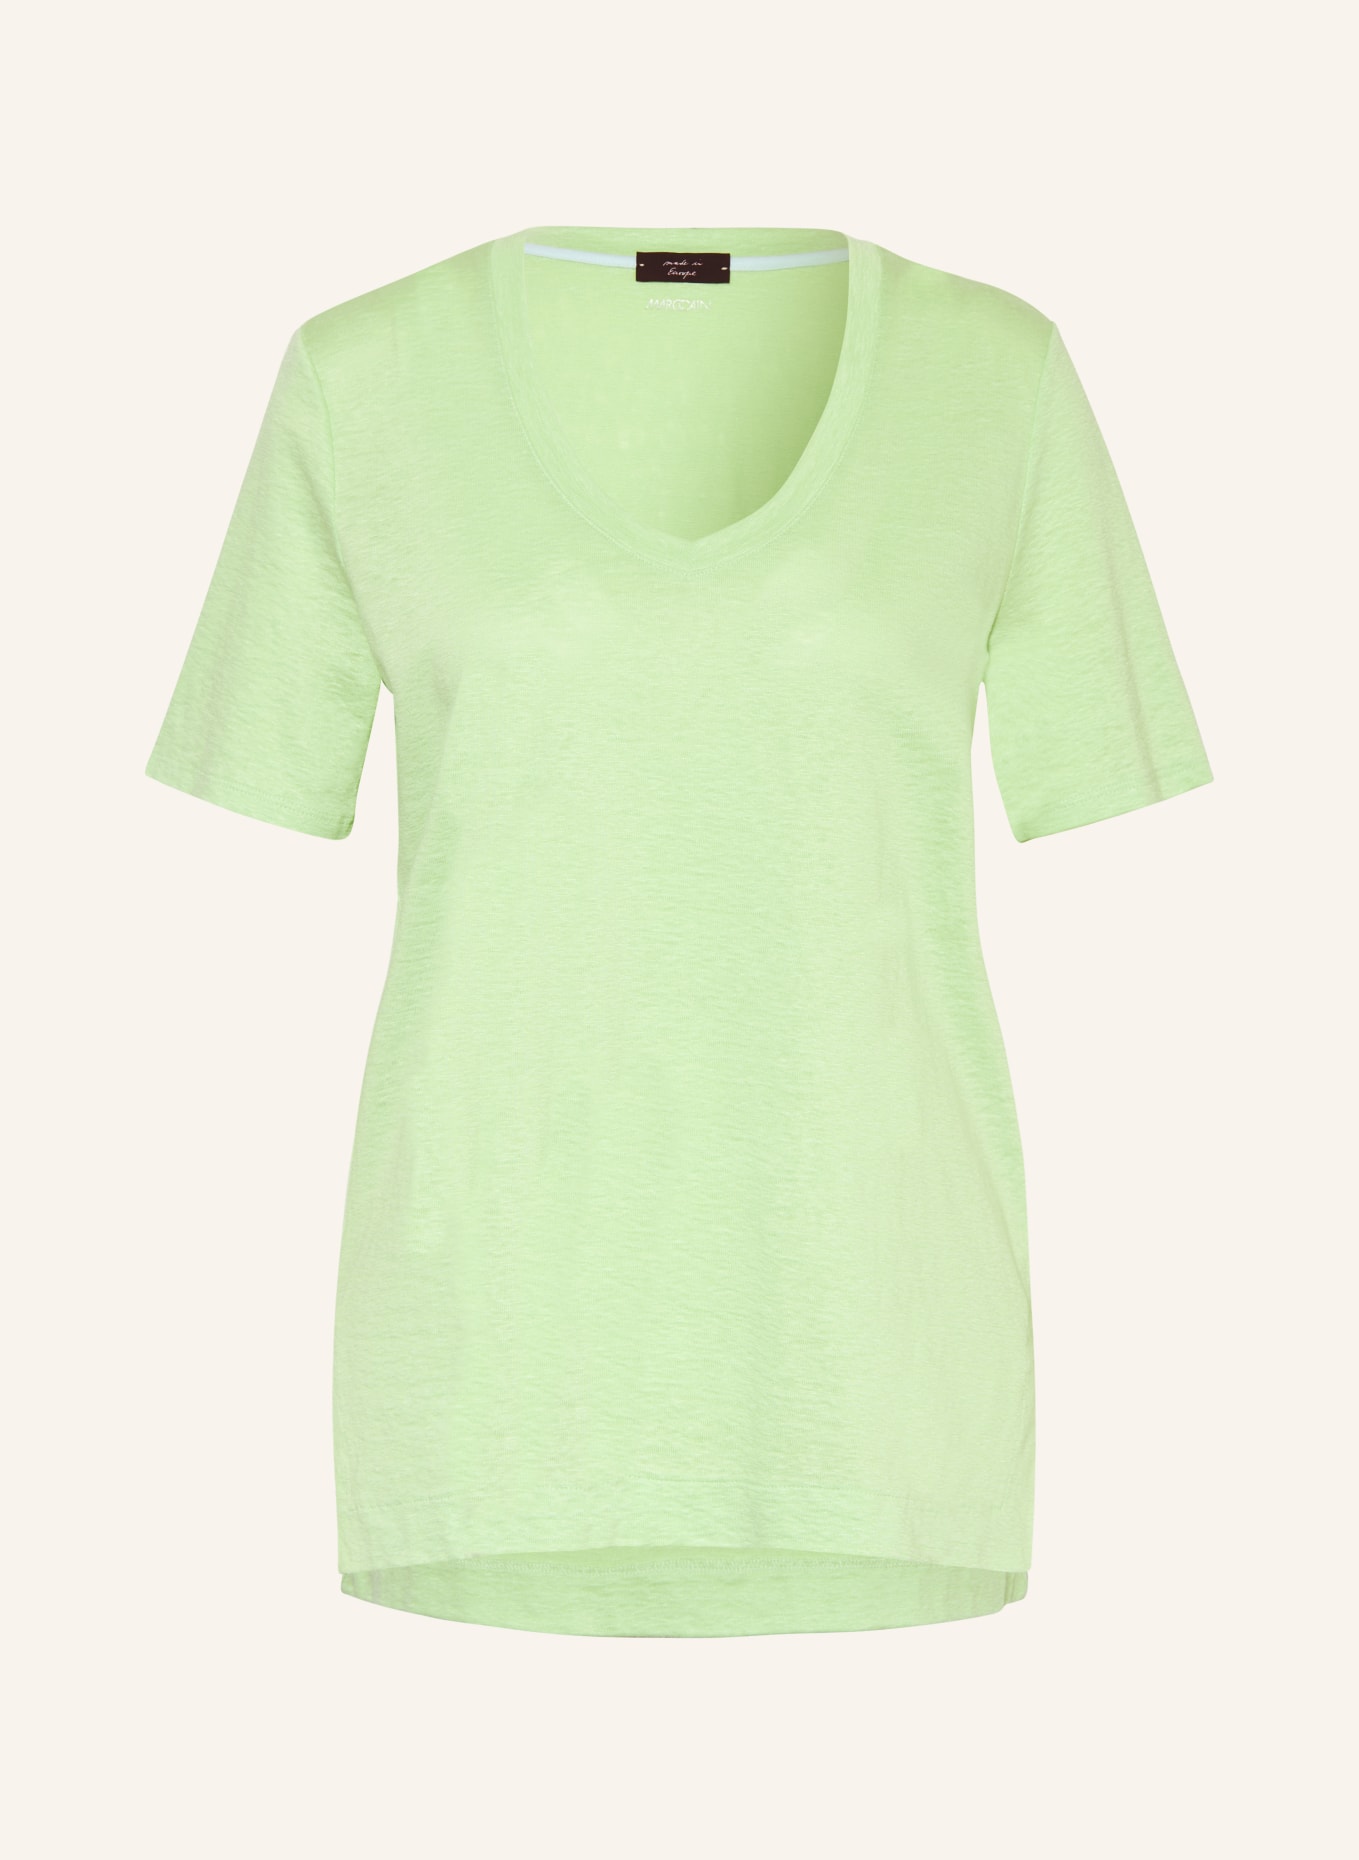 MARC CAIN T-Shirt aus Leinen, Farbe: 531 light apple green (Bild 1)